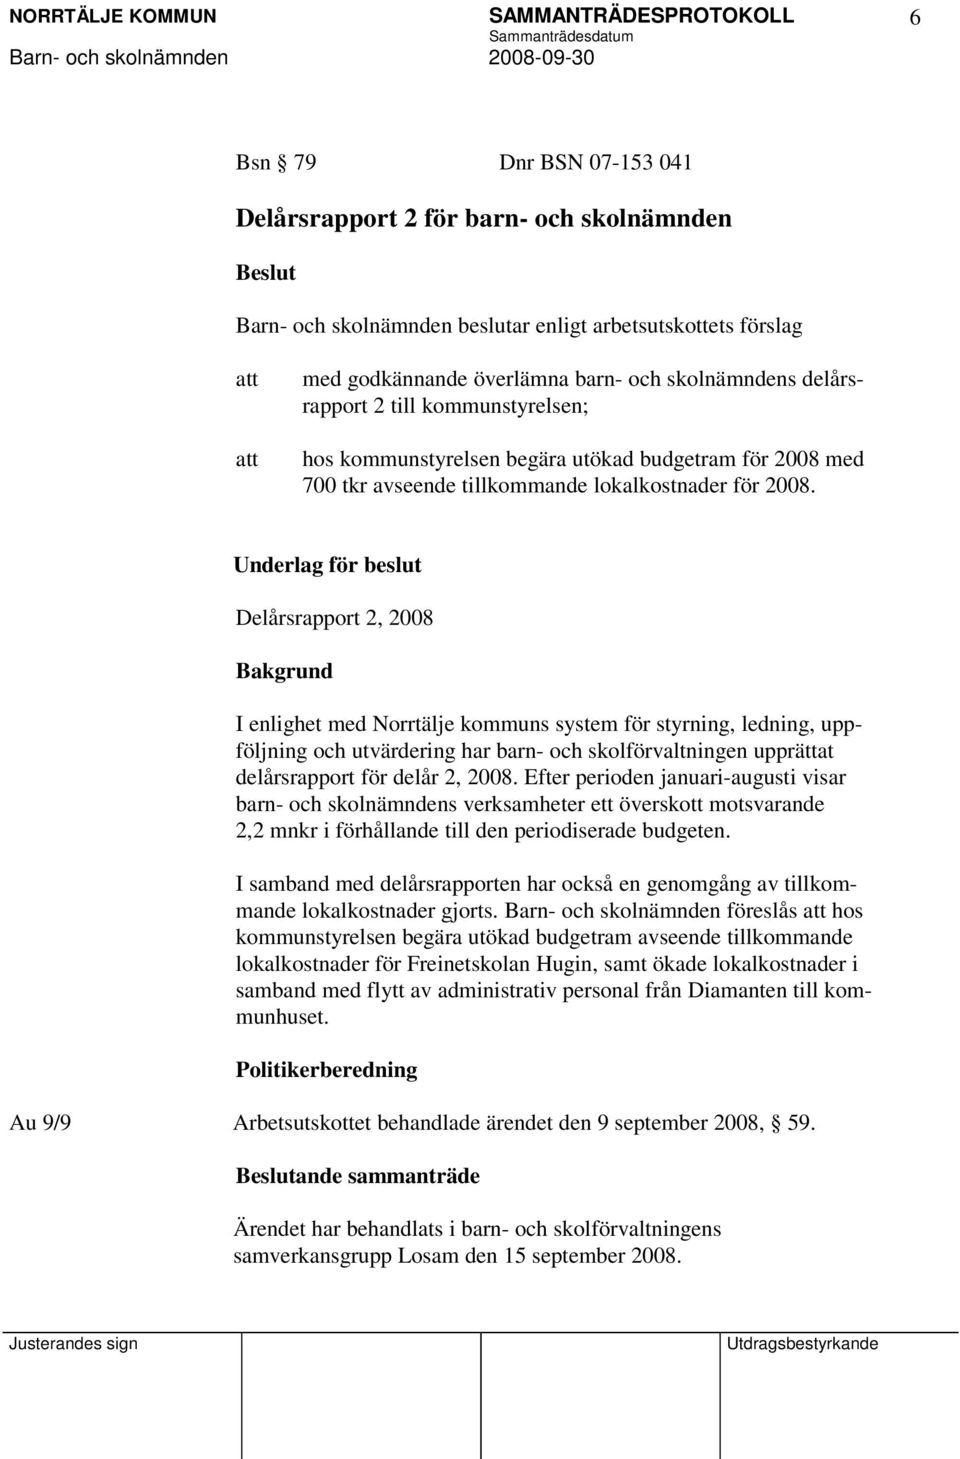 Underlag för beslut Delårsrapport 2, 2008 Bakgrund I enlighet med Norrtälje kommuns system för styrning, ledning, uppföljning och utvärdering har barn- och skolförvaltningen upprättat delårsrapport